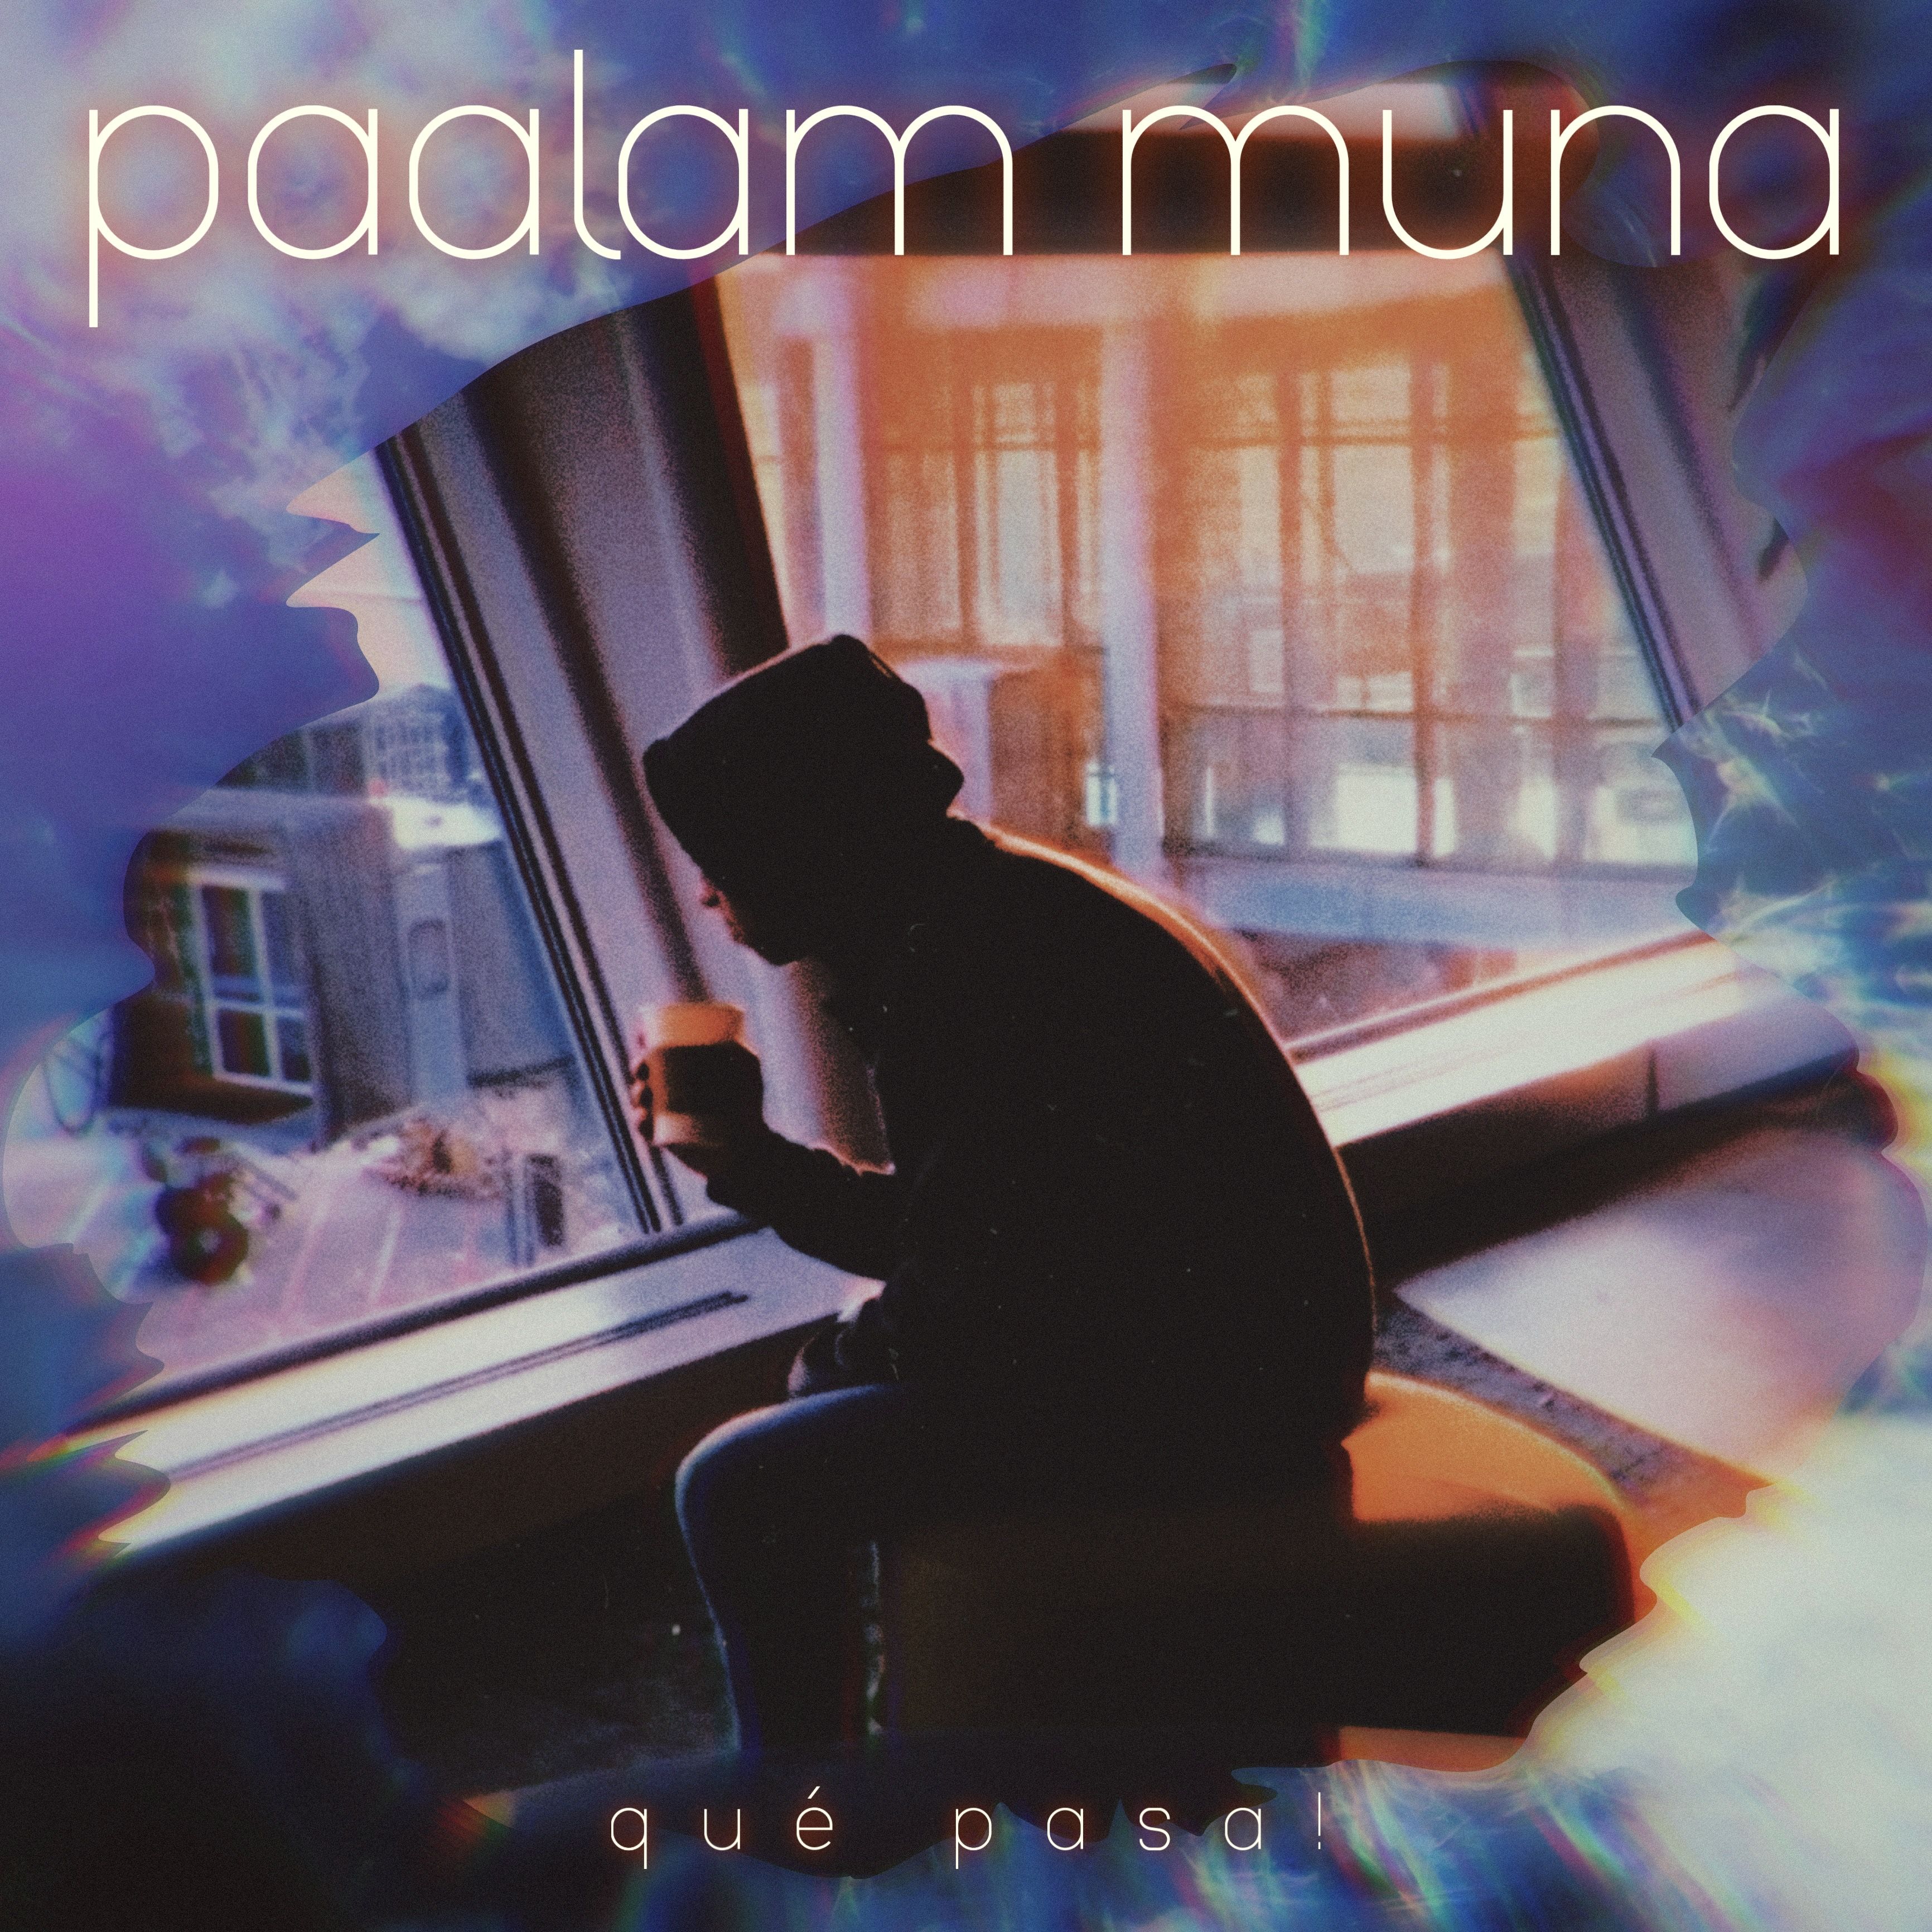 El rapero zaragozano Qué Pasa! publica su nuevo tema y videoclip «Paalam Muna»